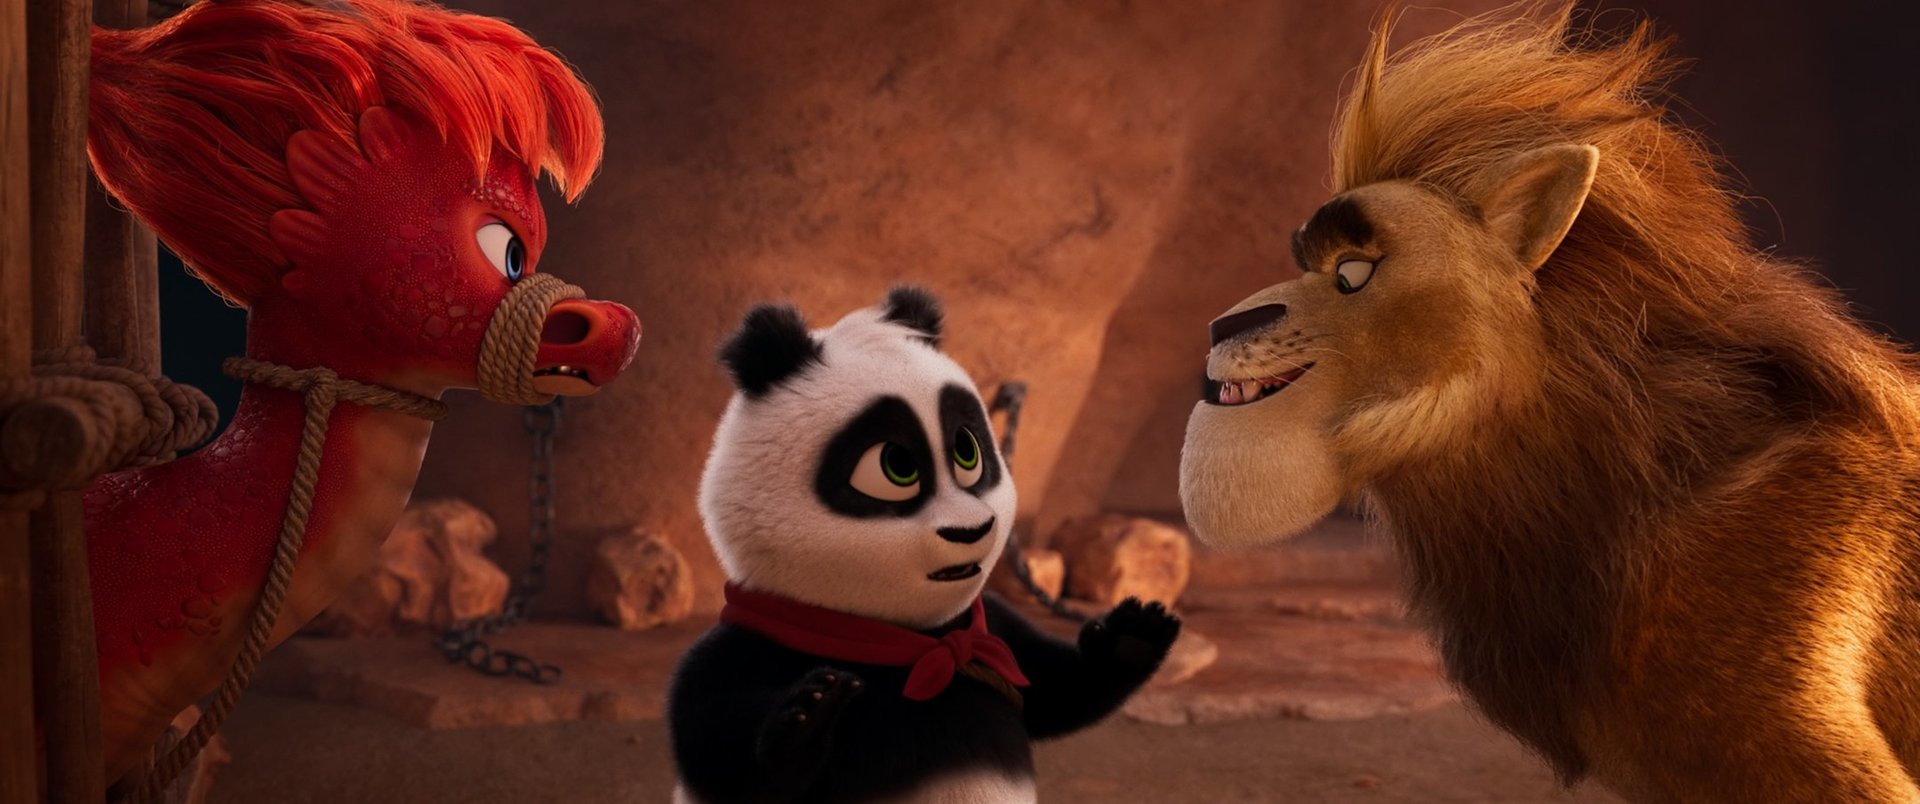 Смотри фильм Приключения панды в кинотеатре